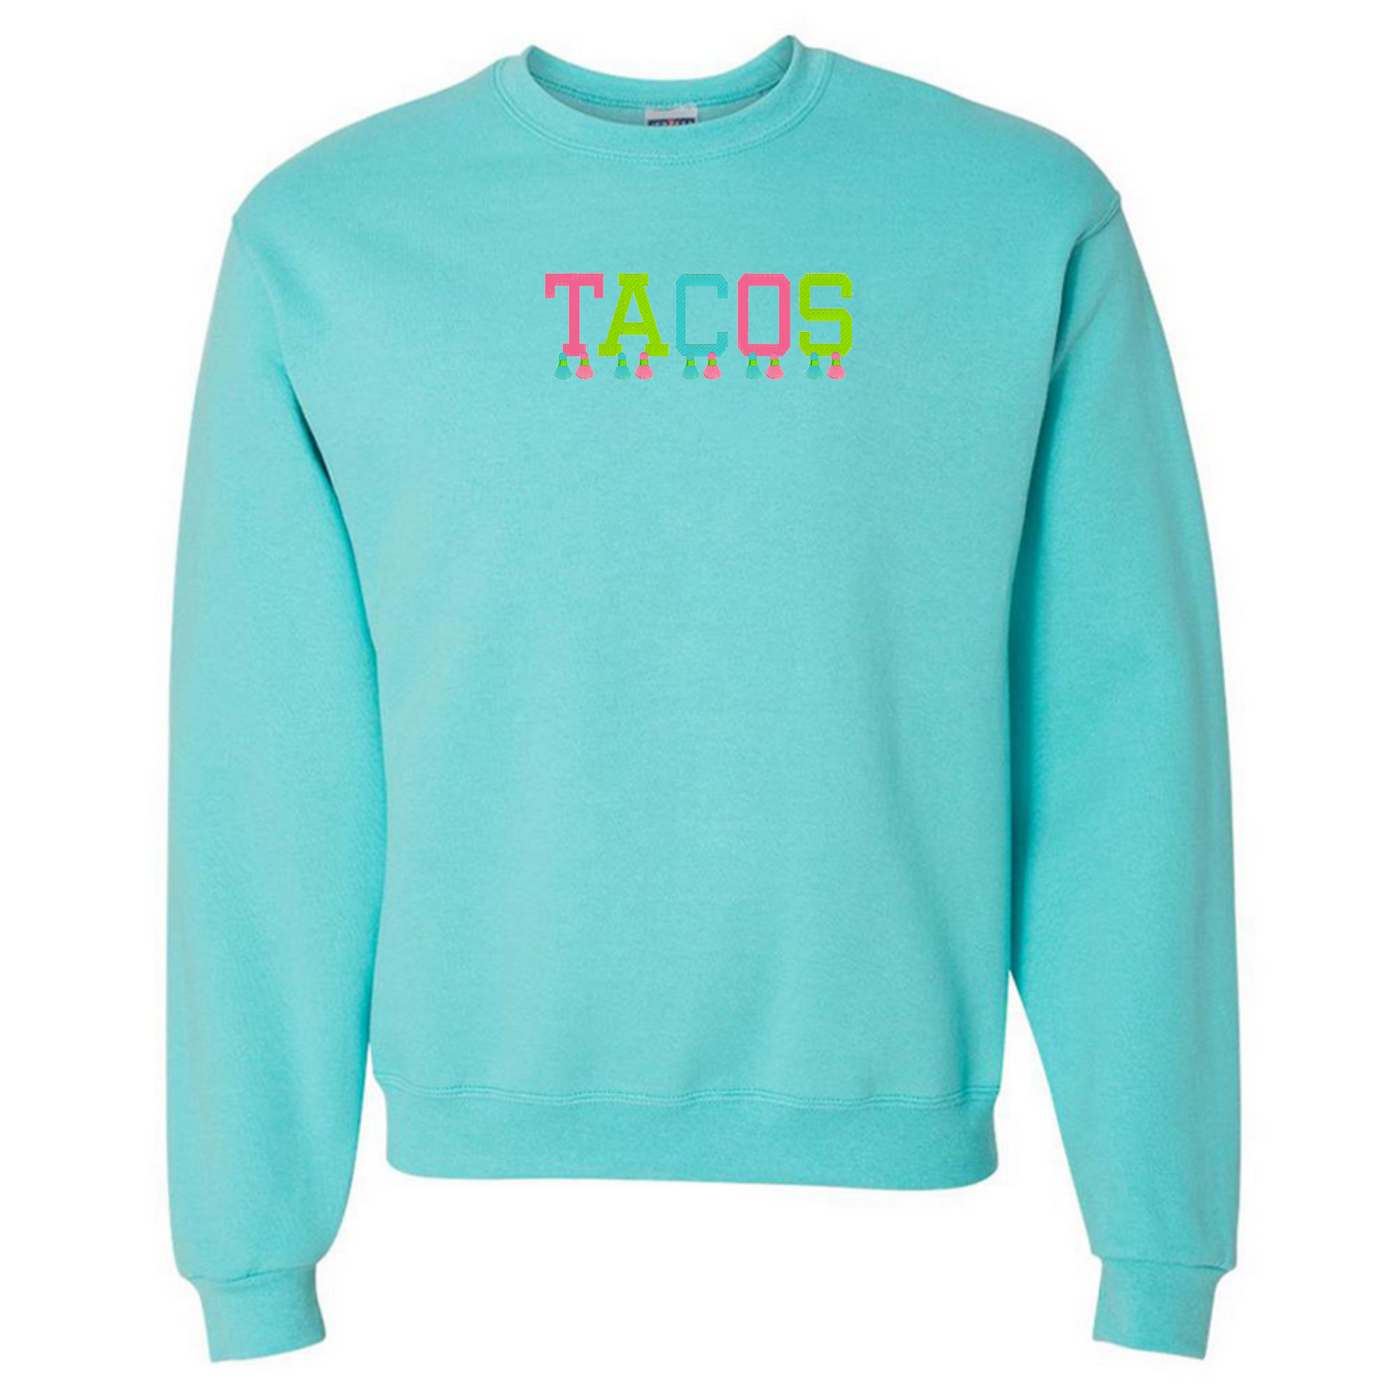 Embroidered Tasseled 'Tacos' Sweatshirt